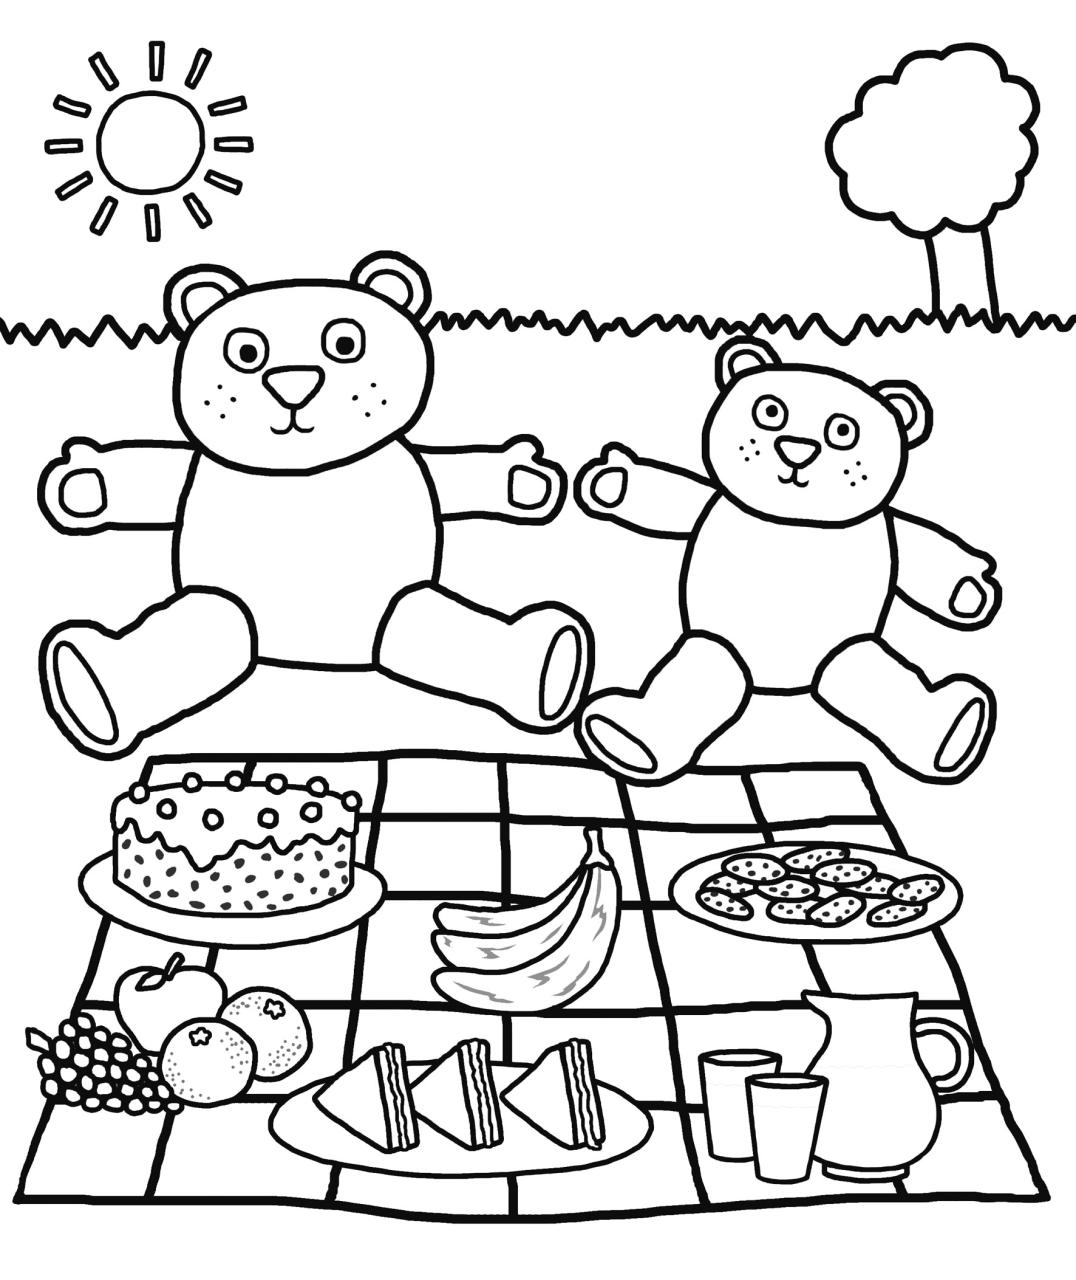 Coloring Worksheets For Kindergarten Free